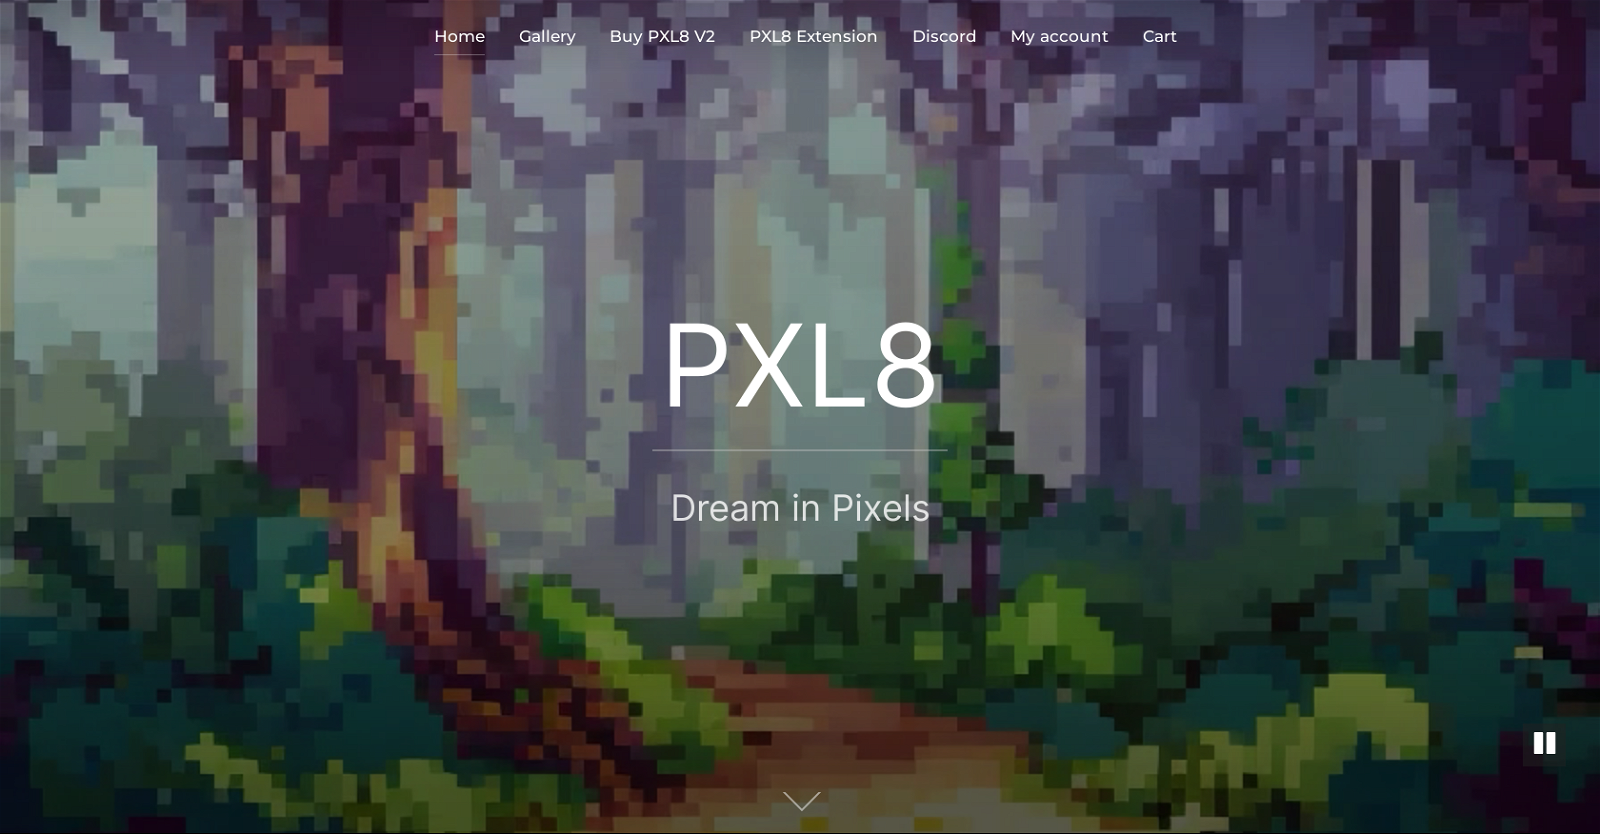 Pxl8 website